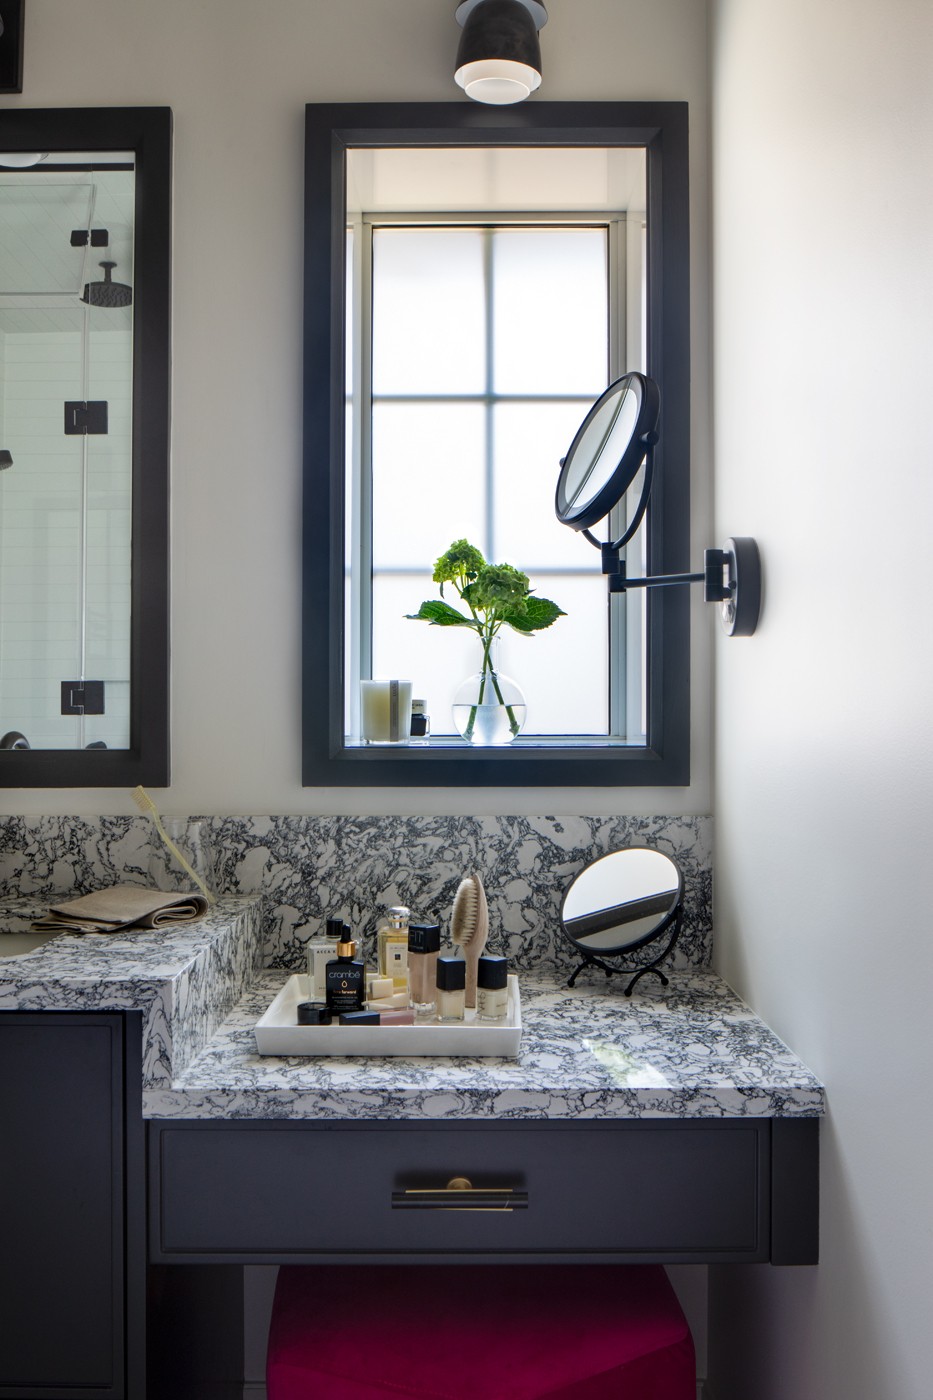 Décor do dia: banheiro com piso geométrico e armários pretos  (Foto: Virginia Macdonald Photographer )